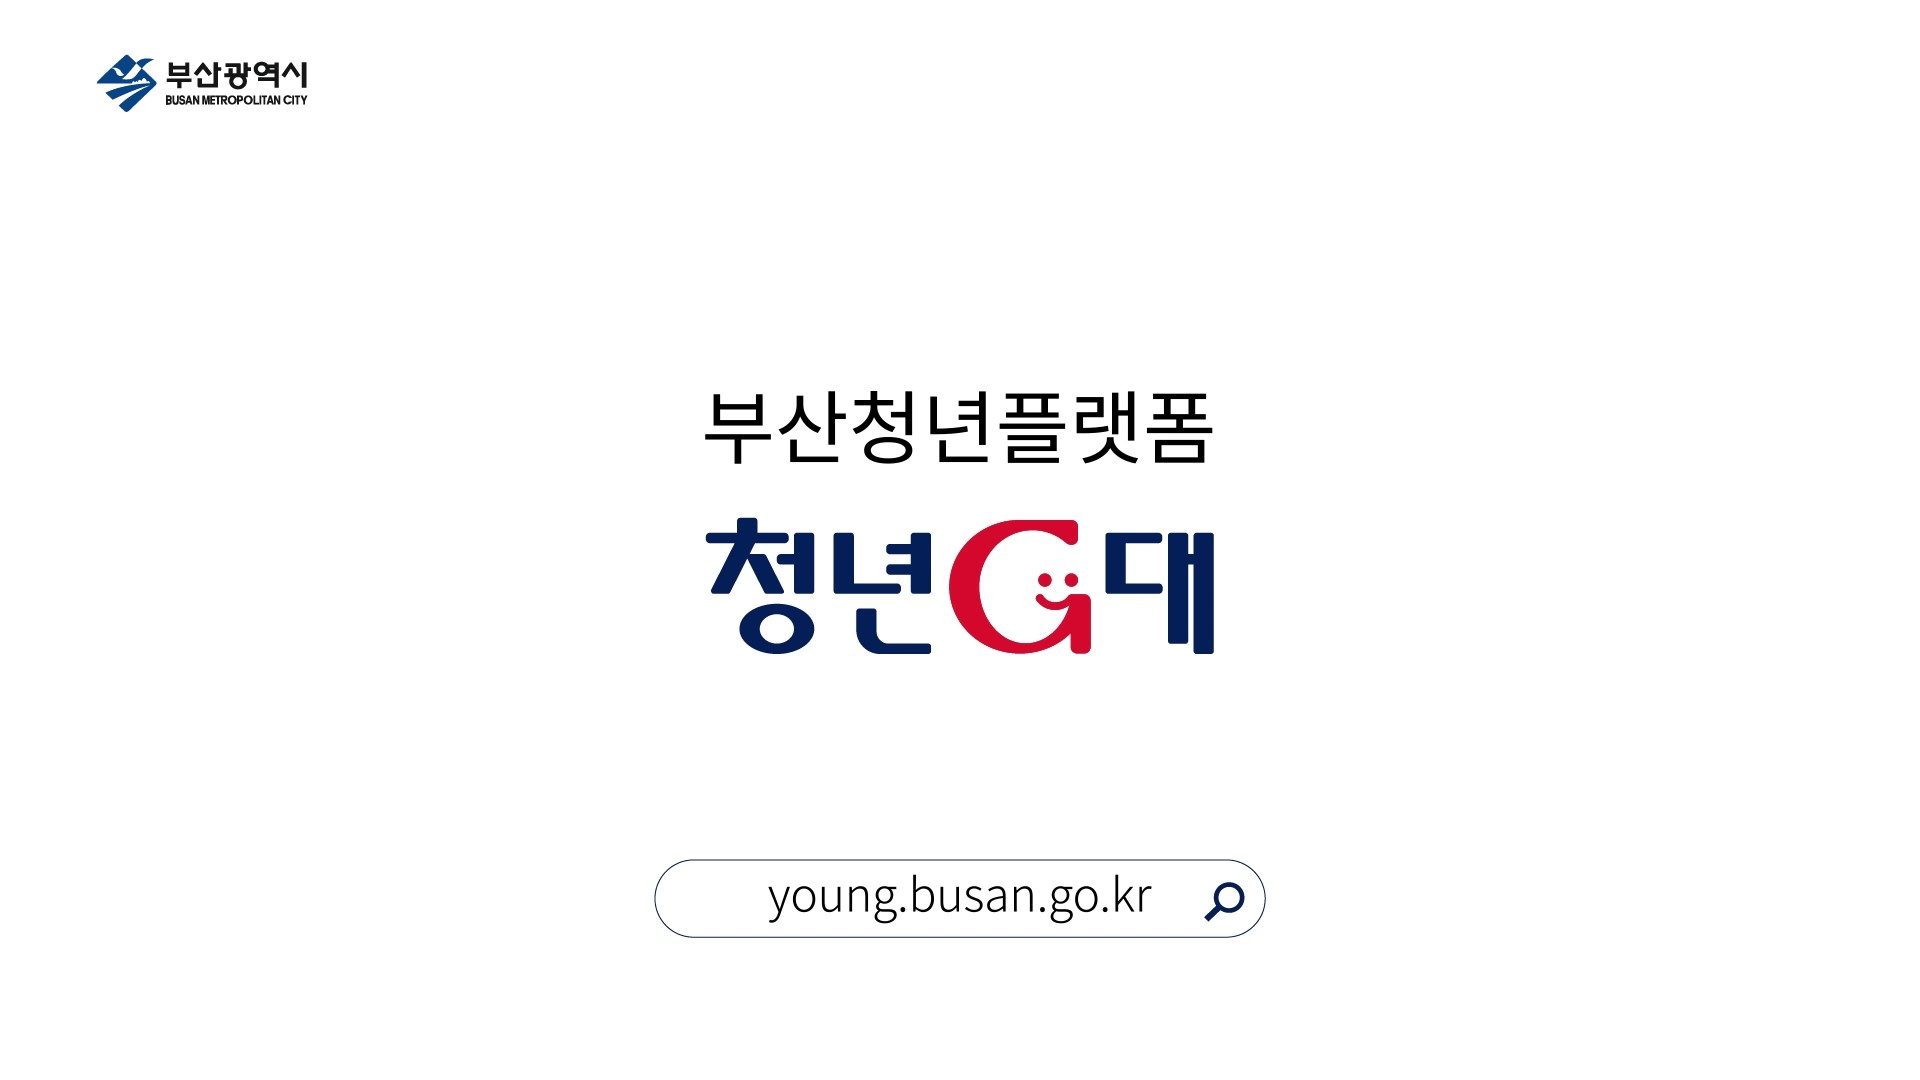 부산광역시 BUSAN METROPOLITAN CITY 부산청년플랫폼 청년G대 
young.busan.go.kr  